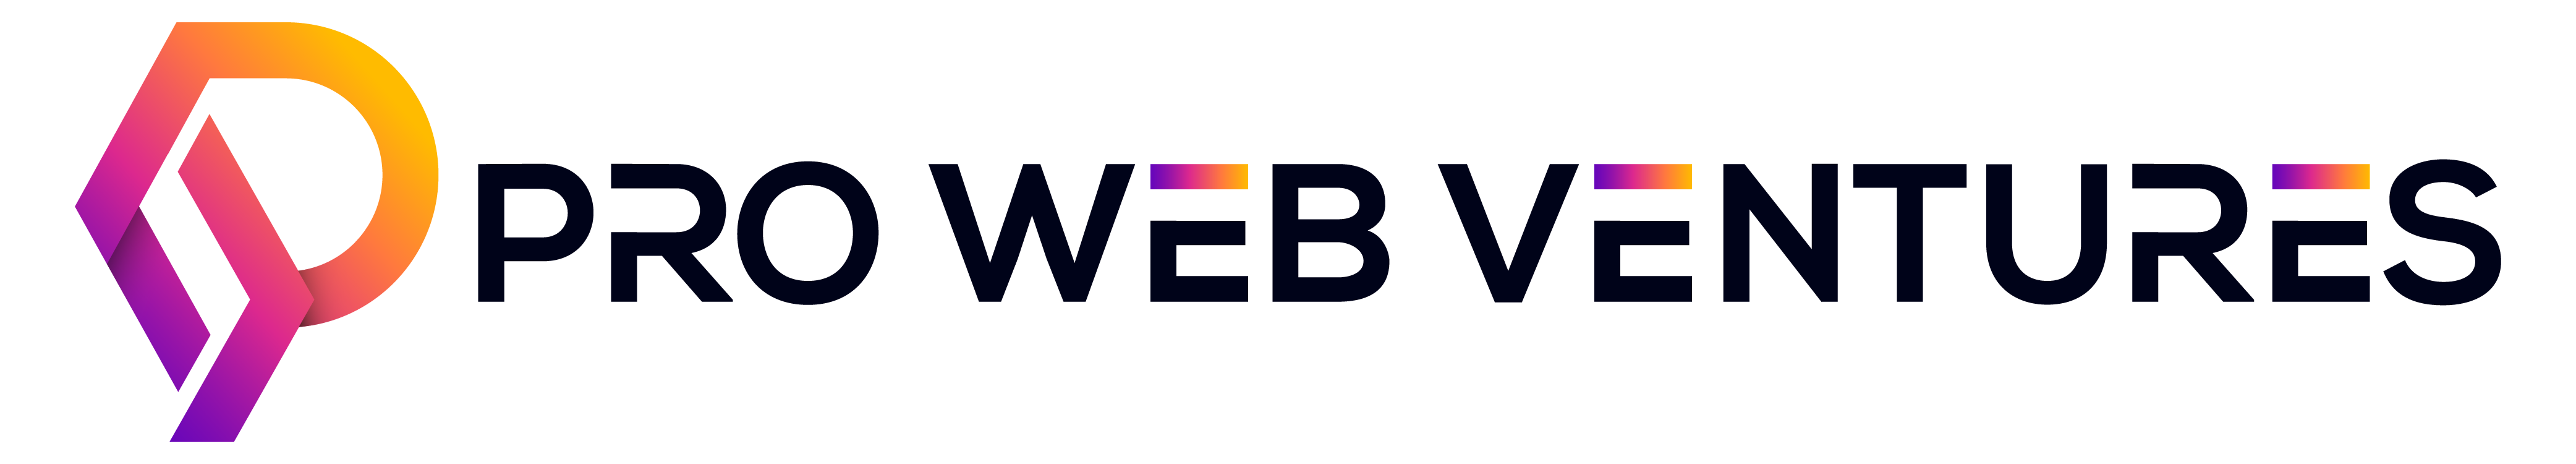 Pro Web Ventures